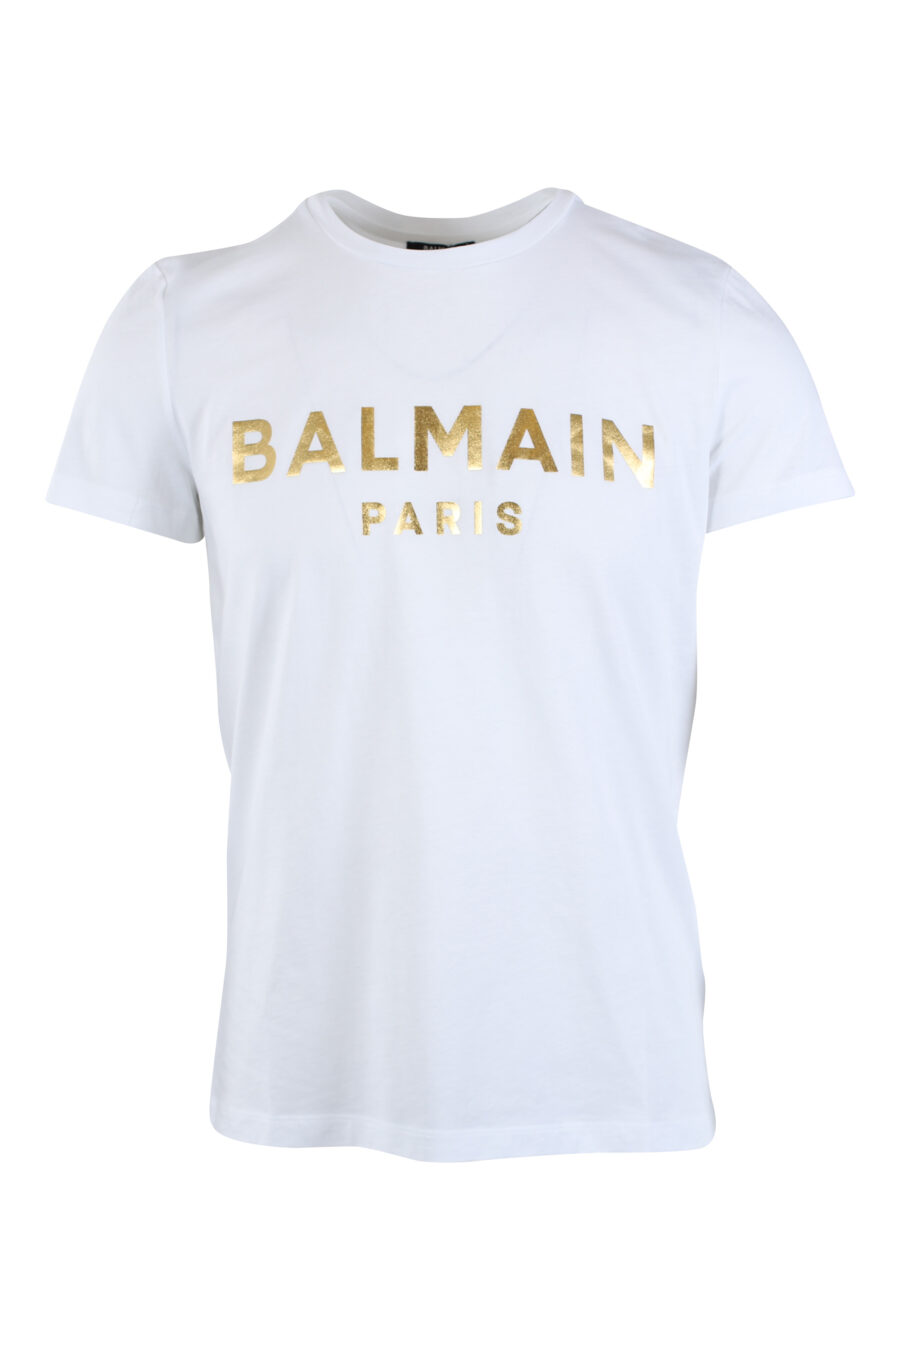 White T-shirt with gold maxilogo "paris" - IMG 2611 1